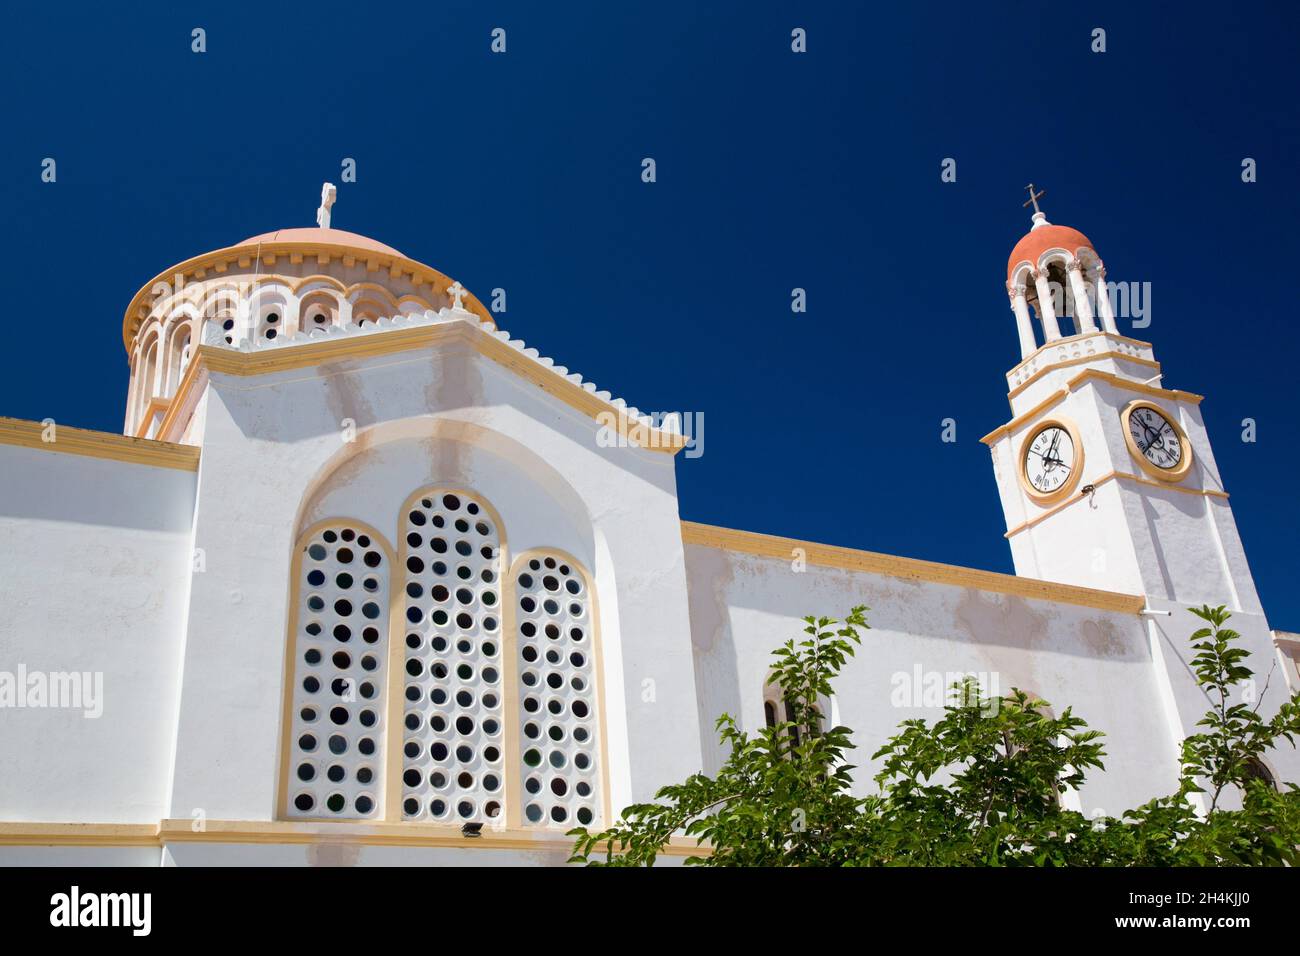 Église Saint-Georges du puits, port de Kastellorizo, île de Kastellorizo (Megisti), Groupe dodécanèse, Grèce Banque D'Images